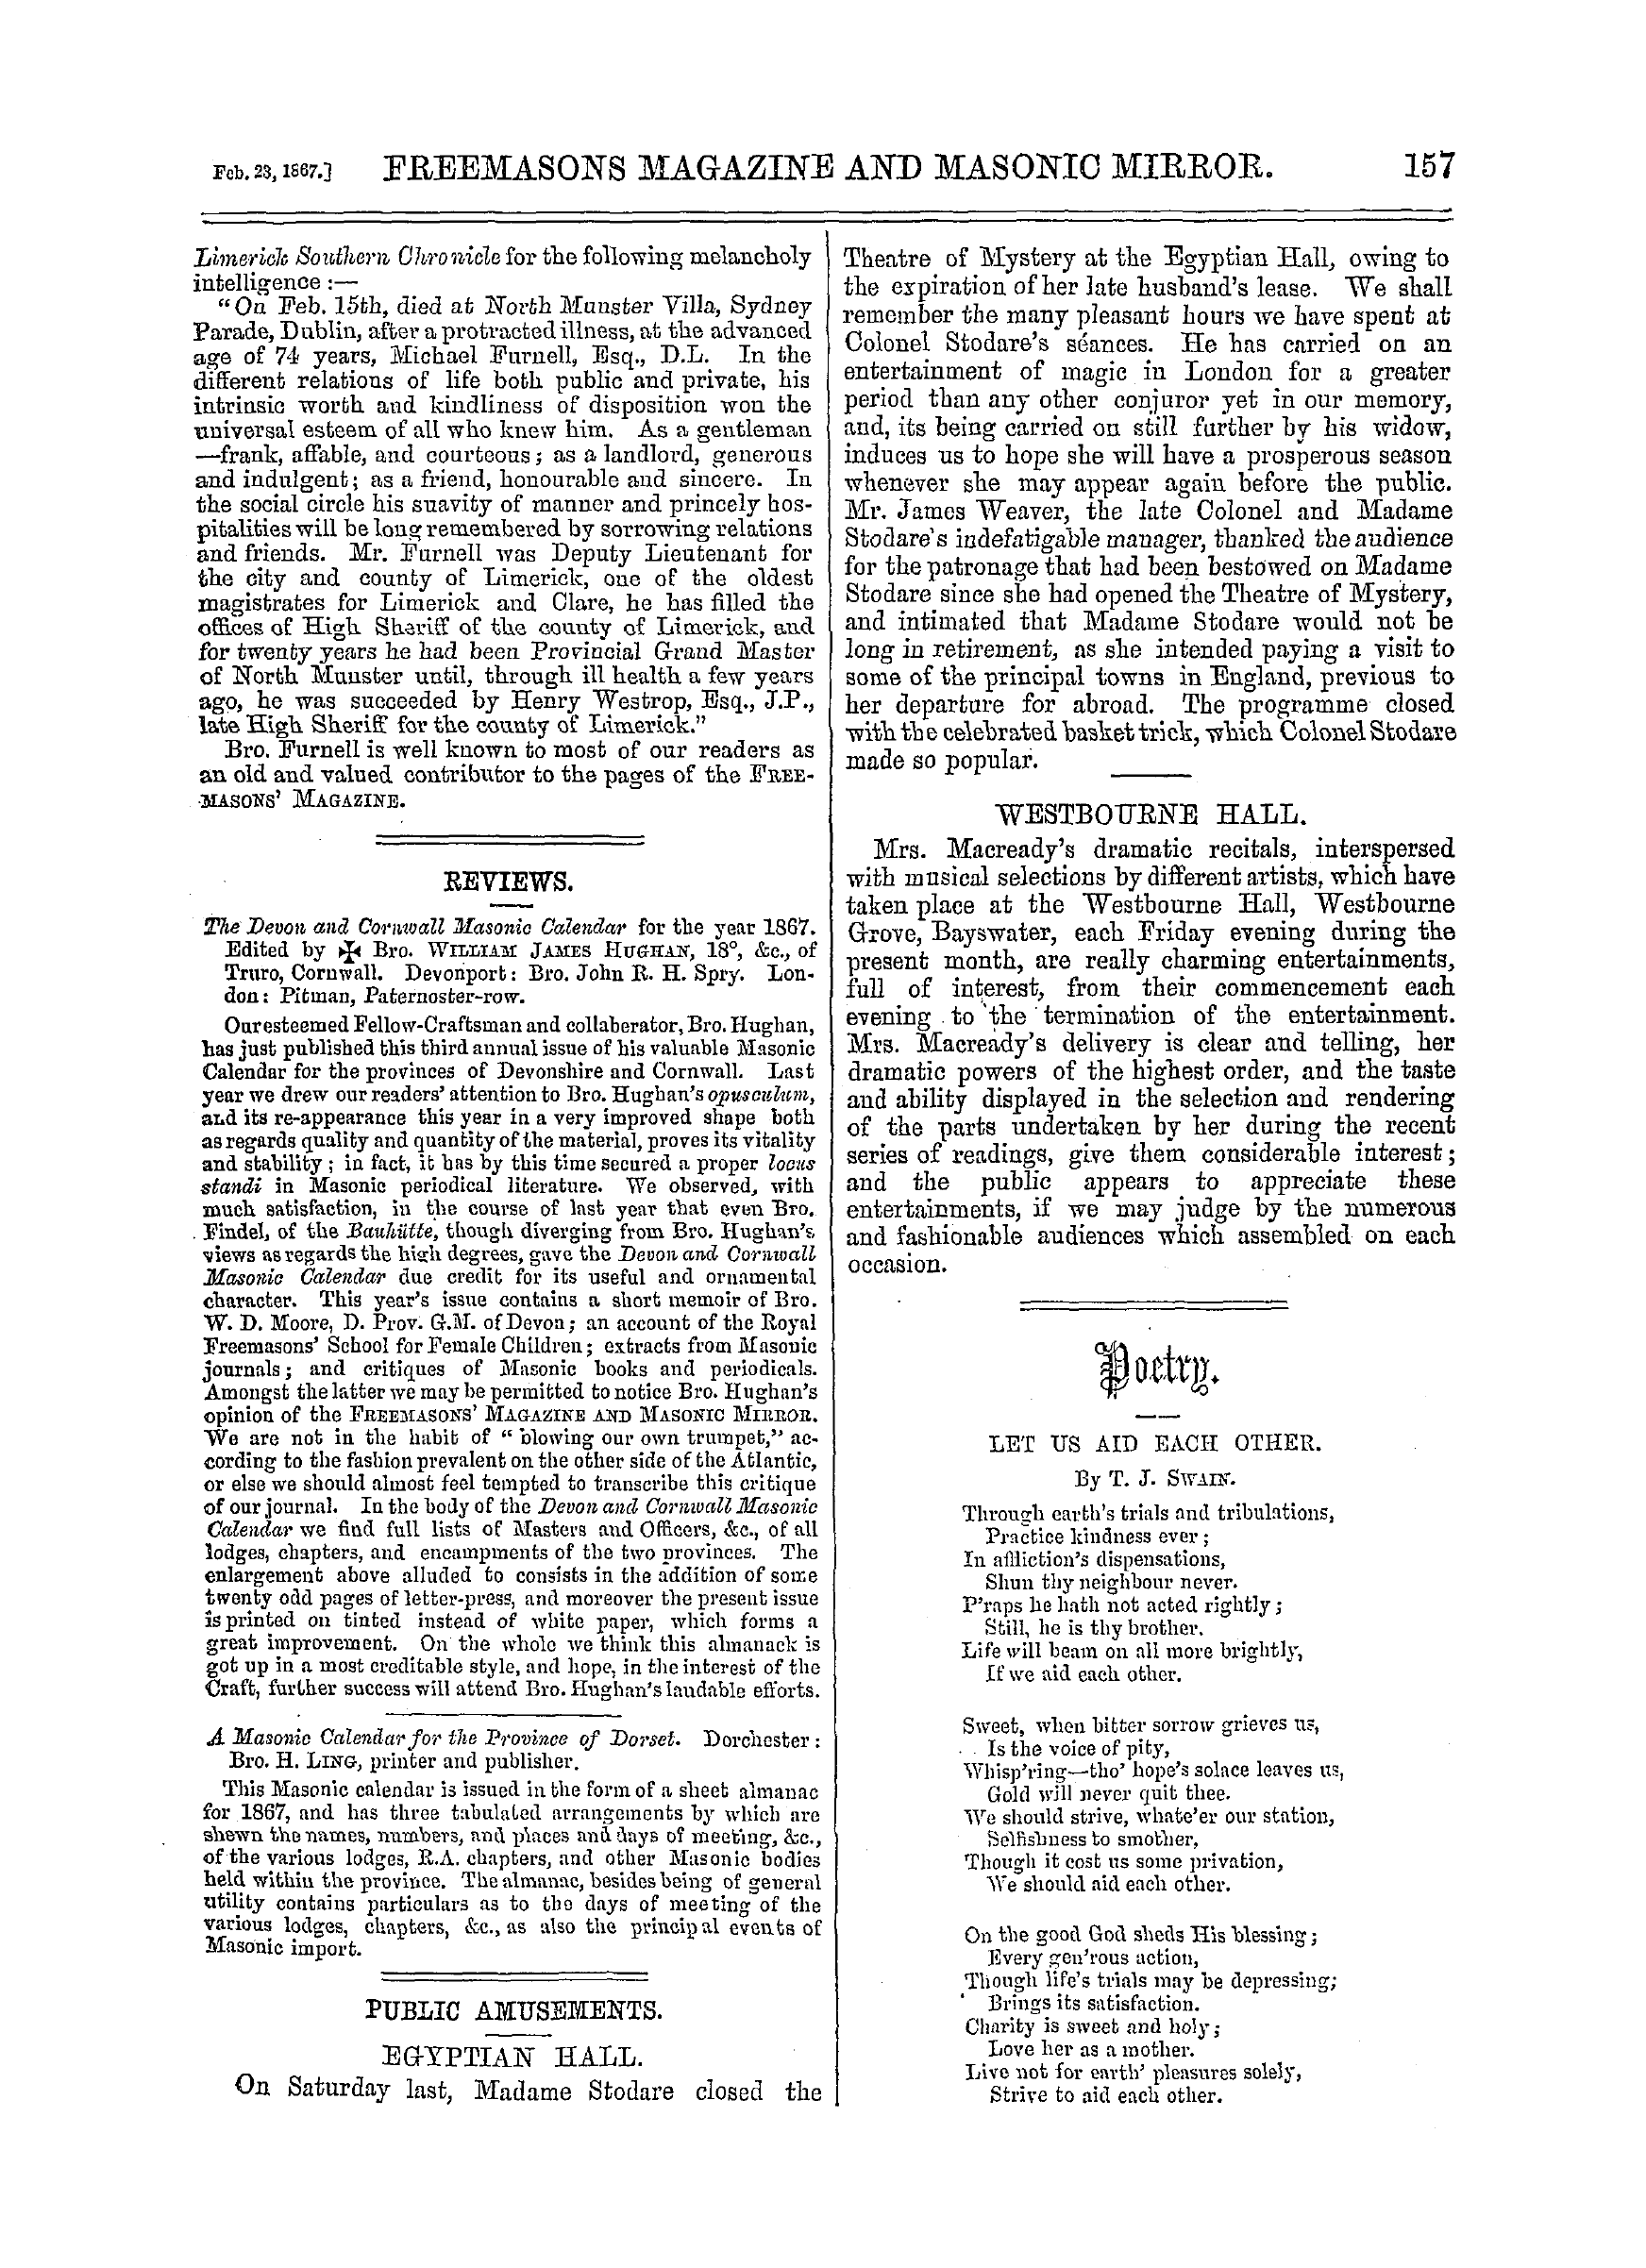 The Freemasons' Monthly Magazine: 1867-02-23 - Public Amusements.